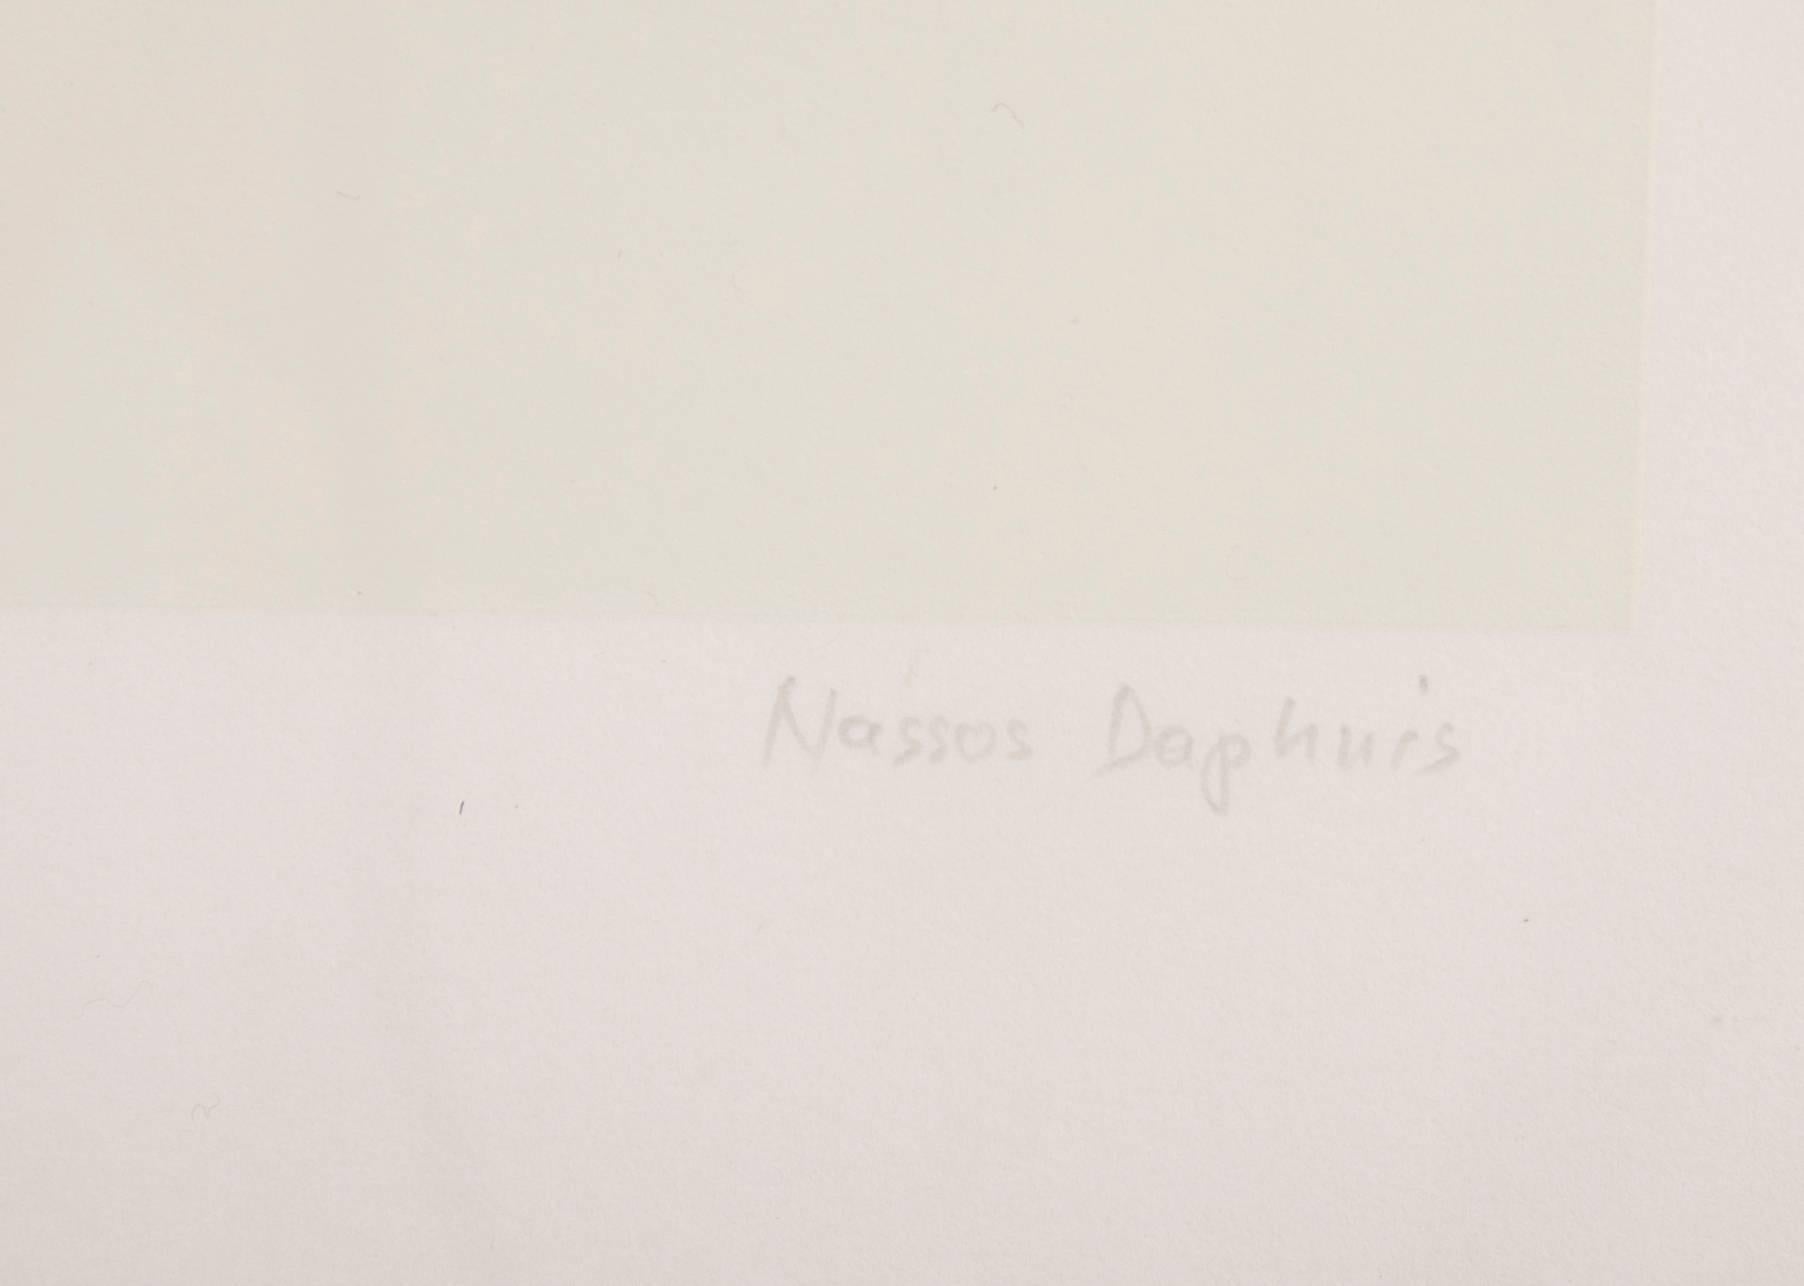 Set aus drei Siebdrucken von Nassos Daphnis (Papier)